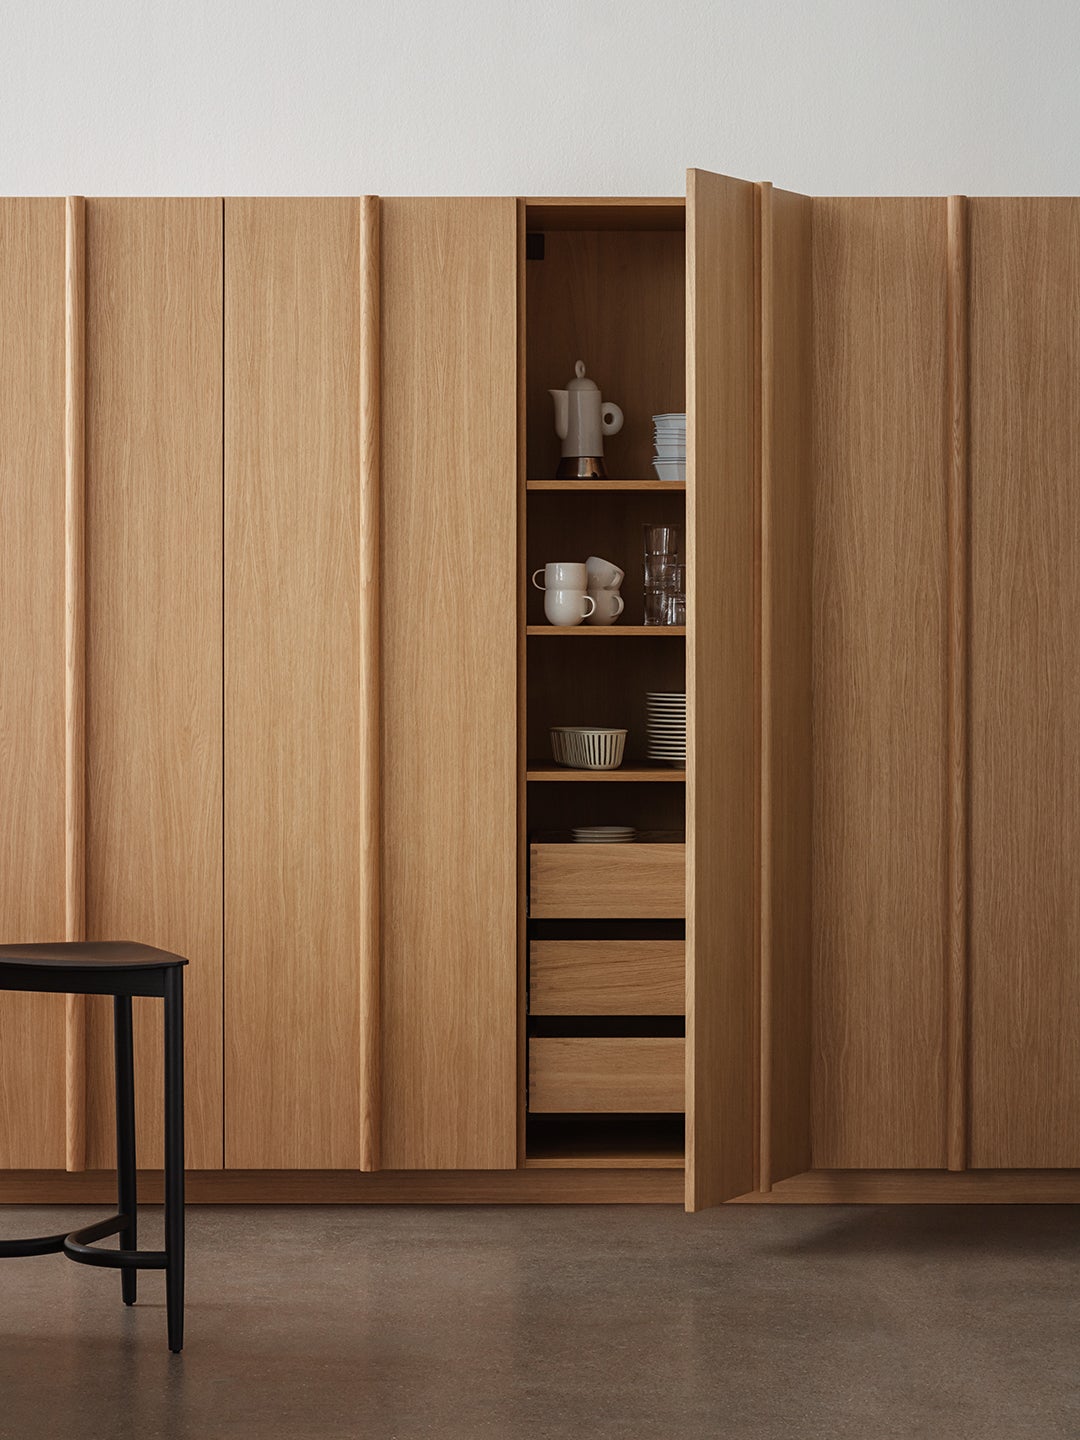 oak wood cabinets